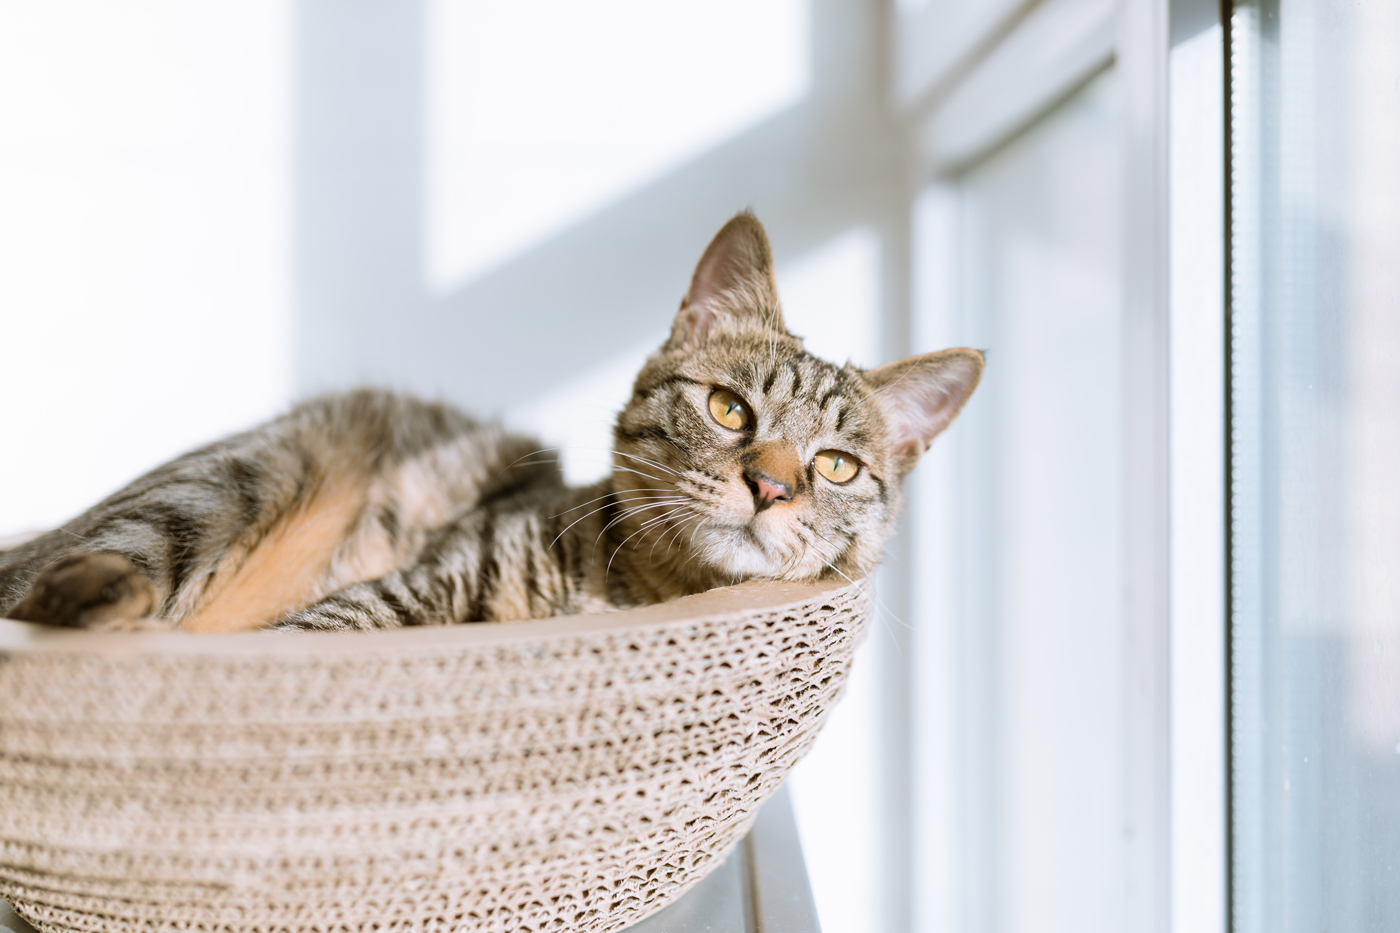 A cat laying in a wicker basket by a window sunbathing